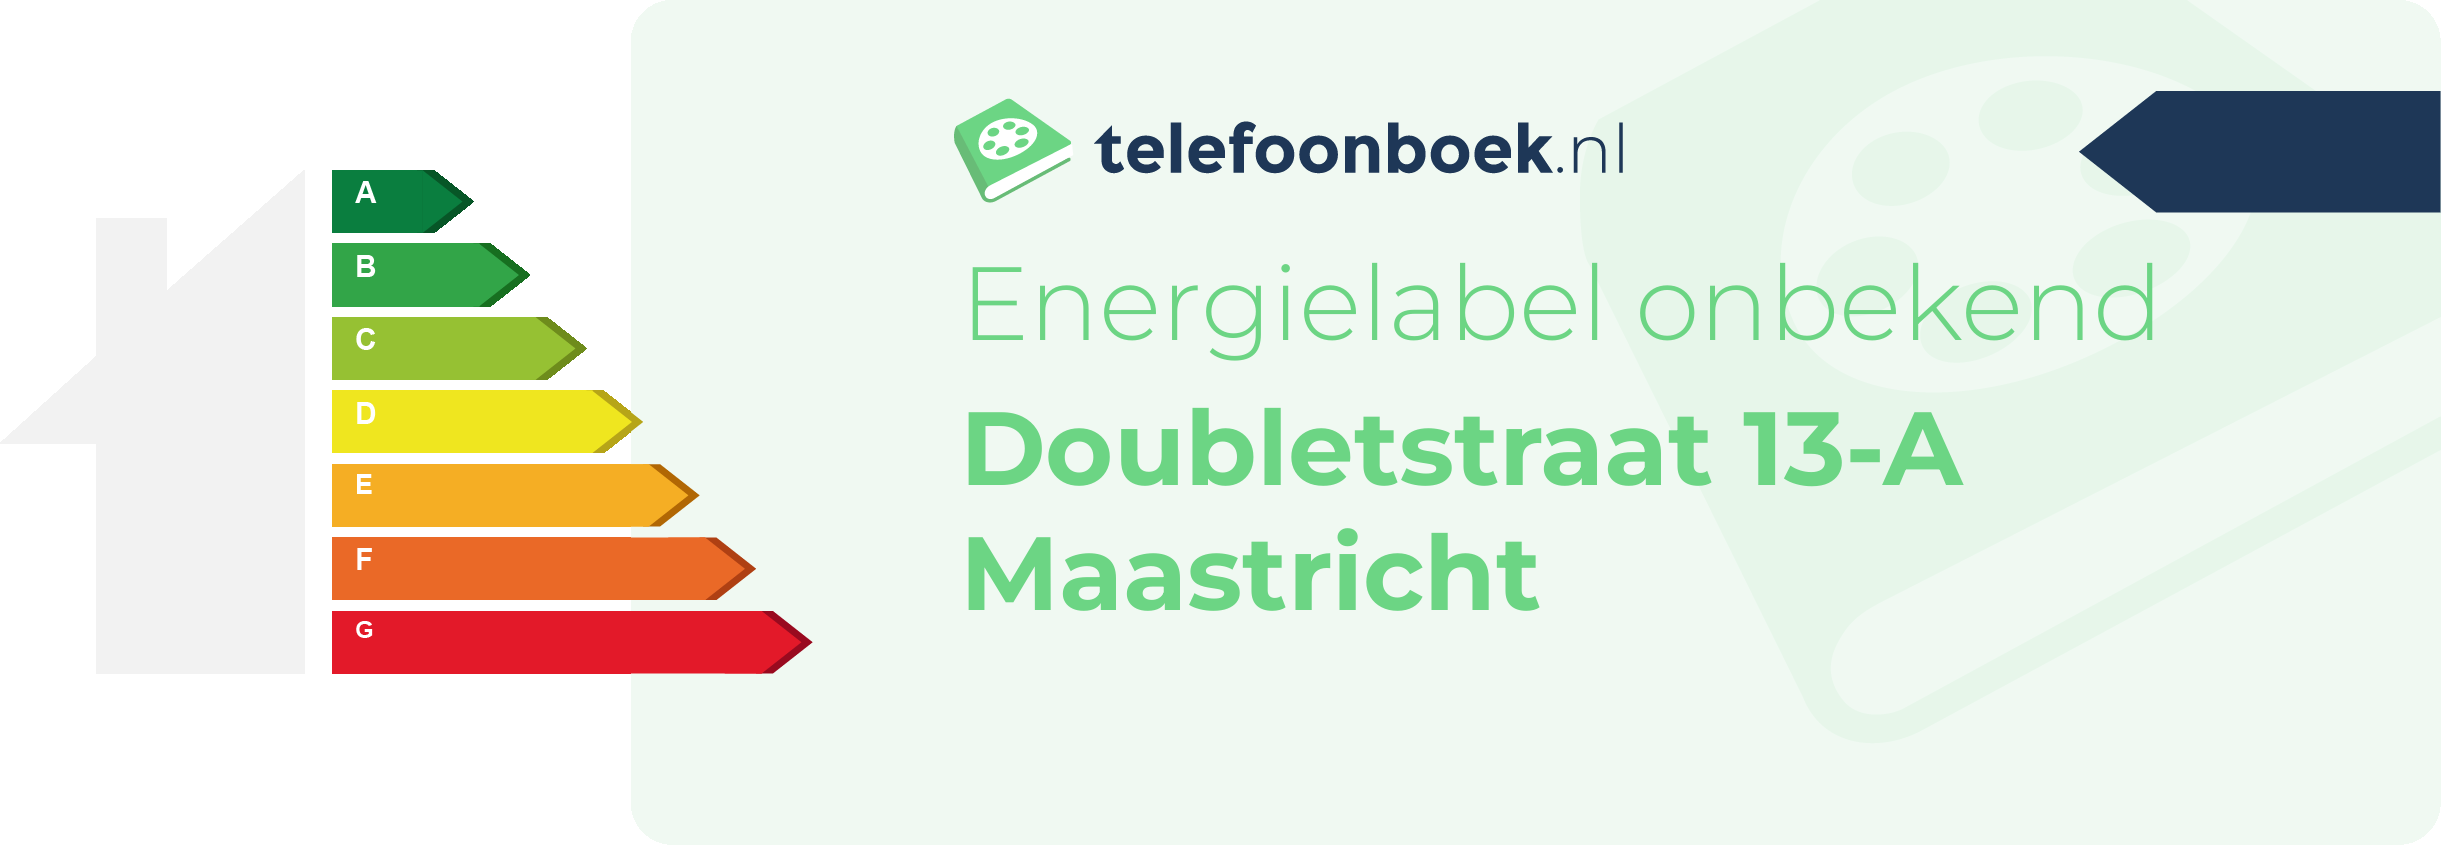 Energielabel Doubletstraat 13-A Maastricht